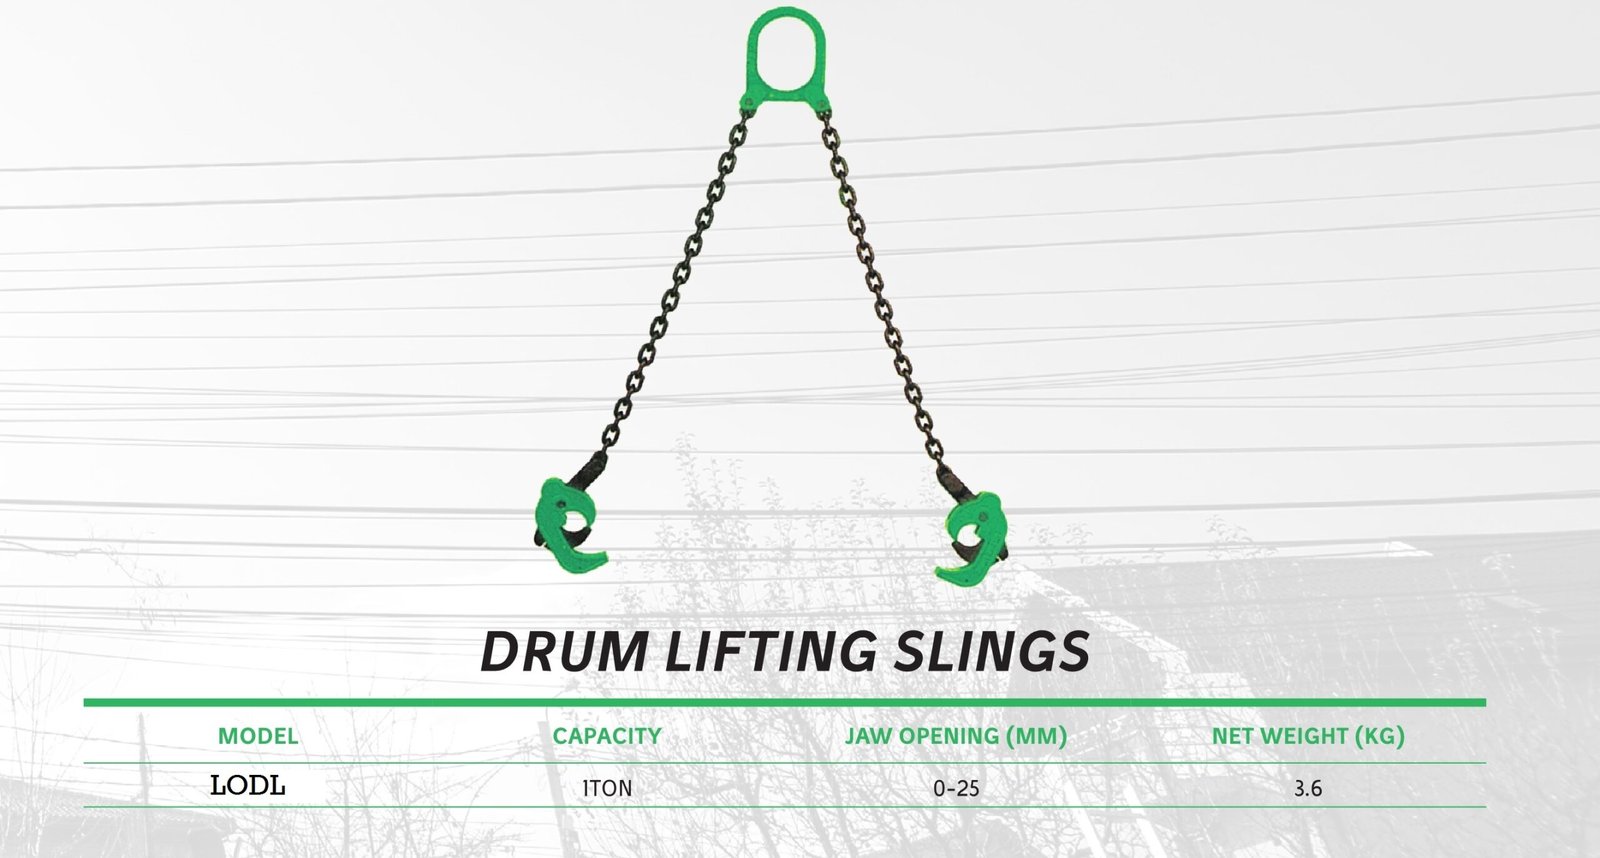 Slings- Drum Lifting (LODL) Drum lifting slings (LODL) Drum lifting slings suppliers in UAE and DUBAI SLings suppliers in DUbai and uae 